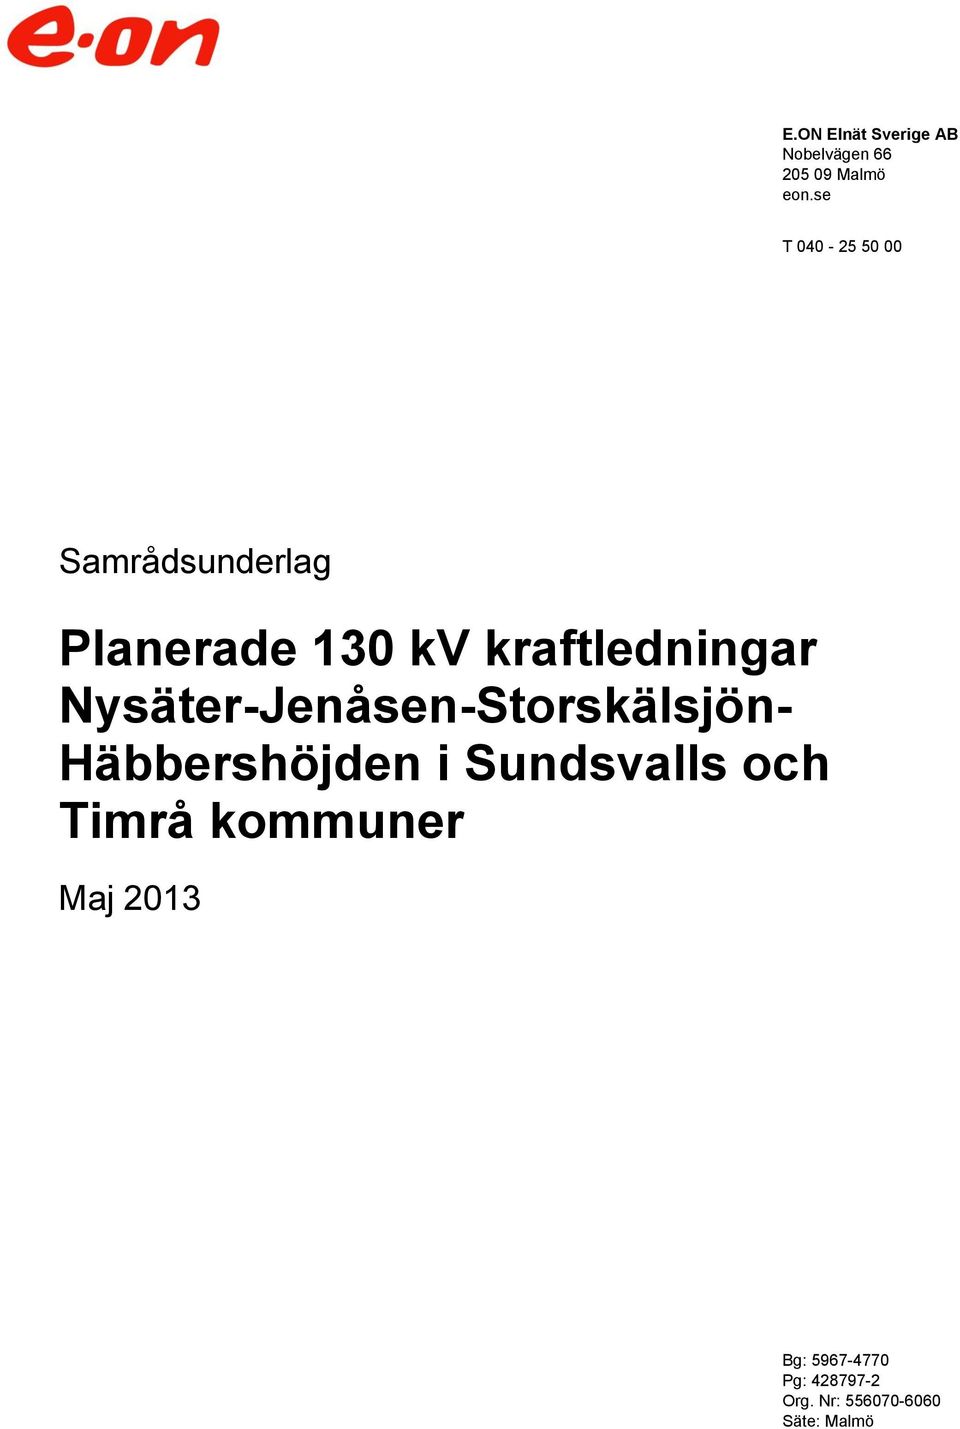 Nysäter-Jenåsen-Storskälsjön- Häbbershöjden i Sundsvalls och